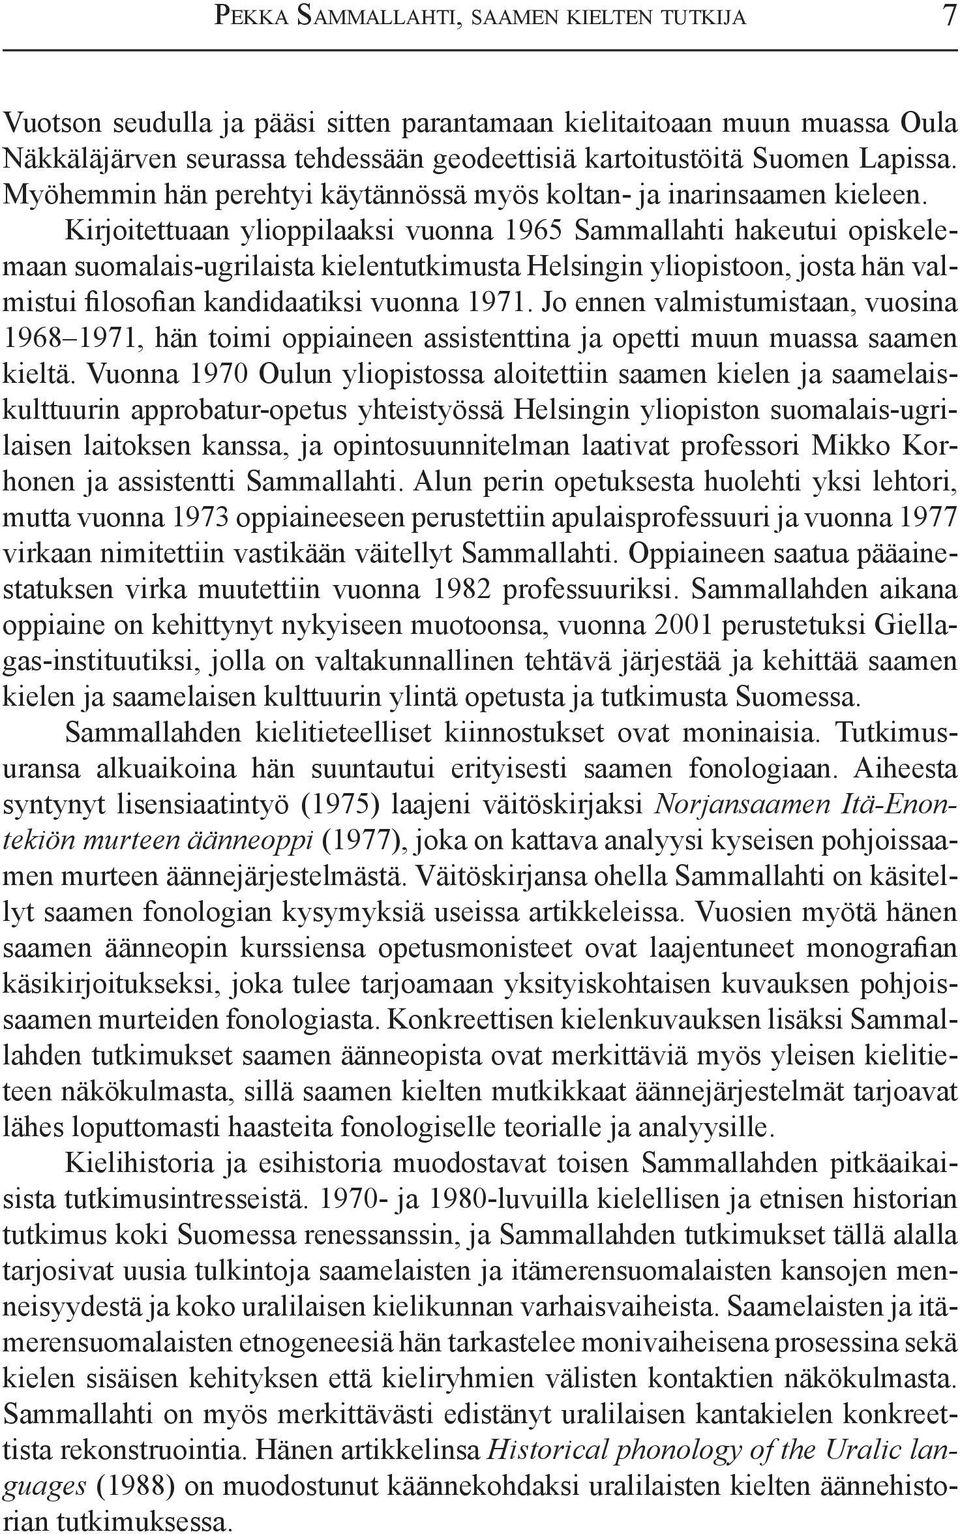 Kirjoitettuaan ylioppilaaksi vuonna 1965 Sammallahti hakeutui opiskelemaan suomalais-ugrilaista kielentutkimusta Helsingin yliopistoon, josta hän valmistui filosofian kandidaatiksi vuonna 1971.